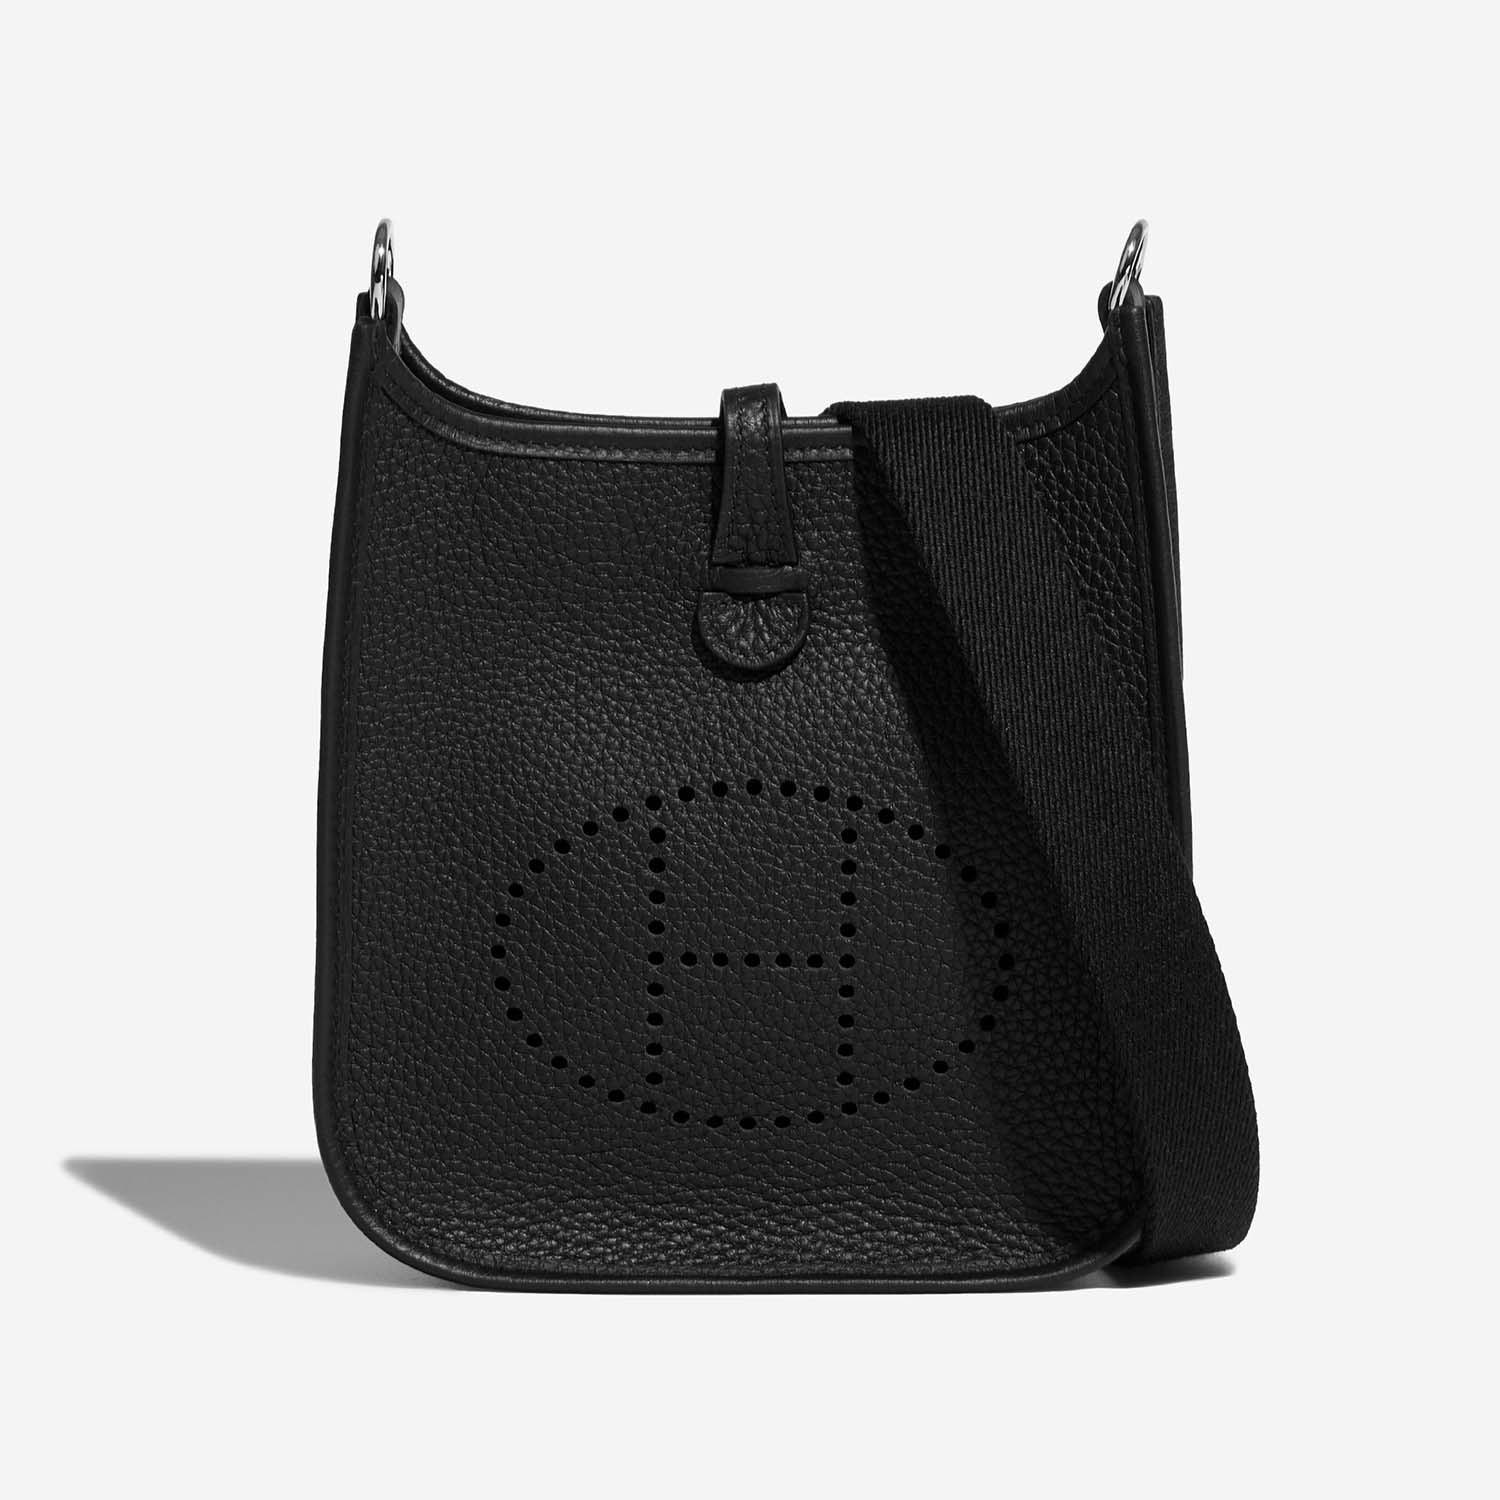 Hermès Evelyne 16 Schwarz 2F S | Verkaufen Sie Ihre Designer-Tasche auf Saclab.com